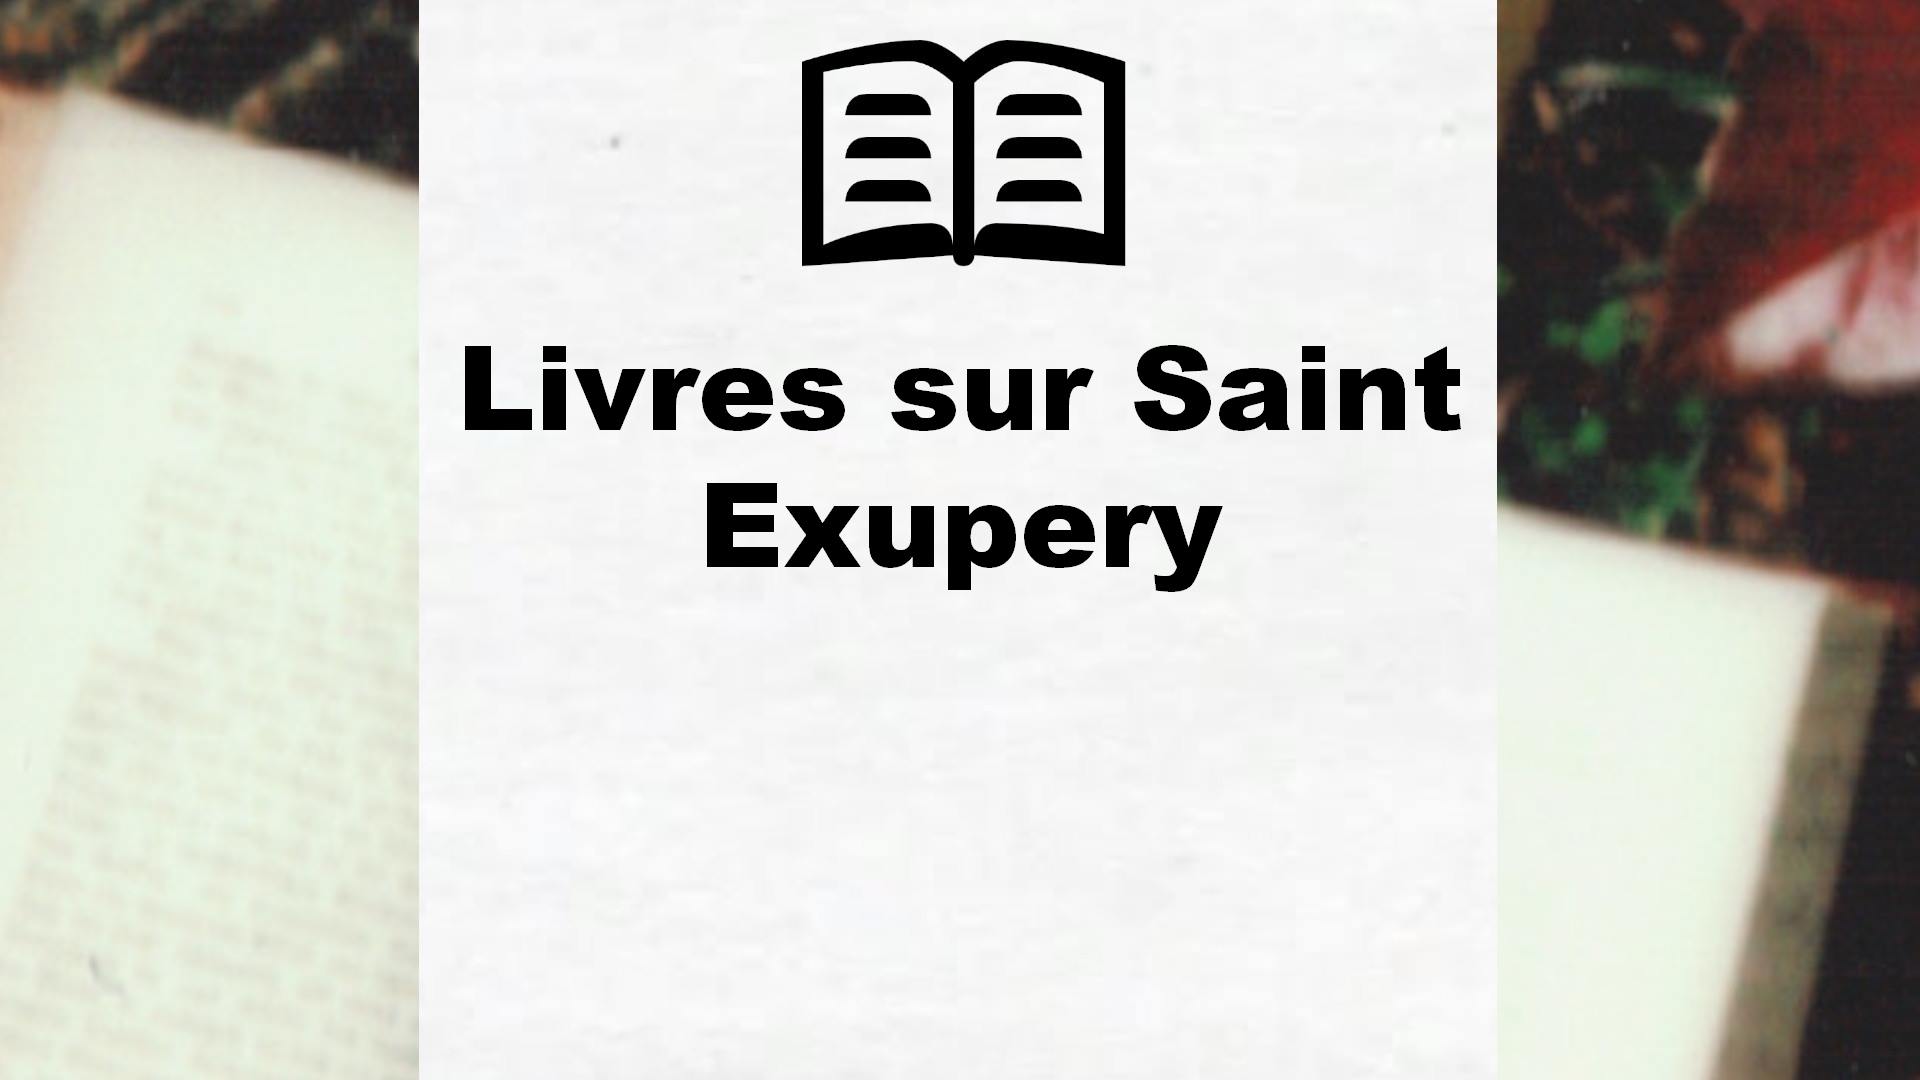 Livres sur Saint Exupery